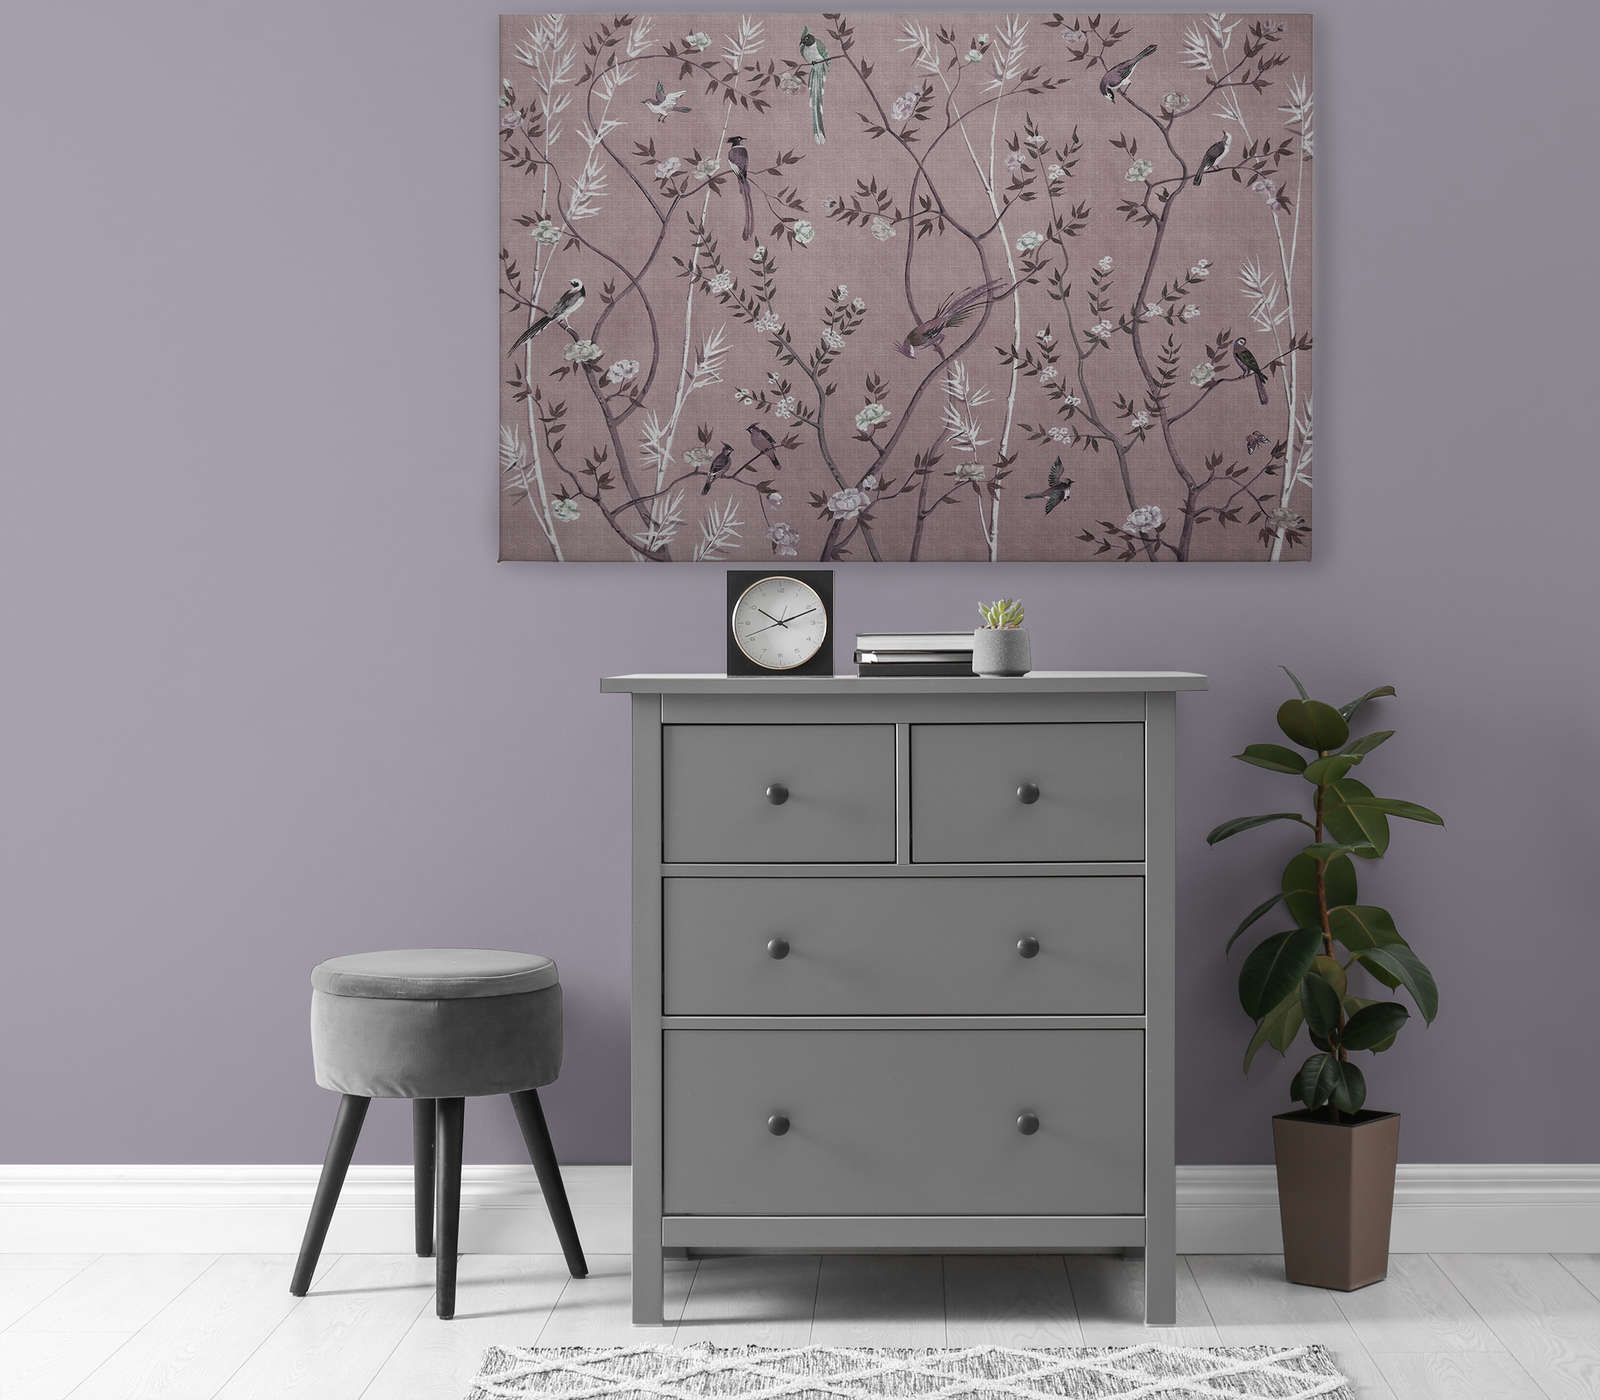             Tea Room 3 - toile oiseaux & fleurs design rose & blanc - 1,20 m x 0,80 m
        